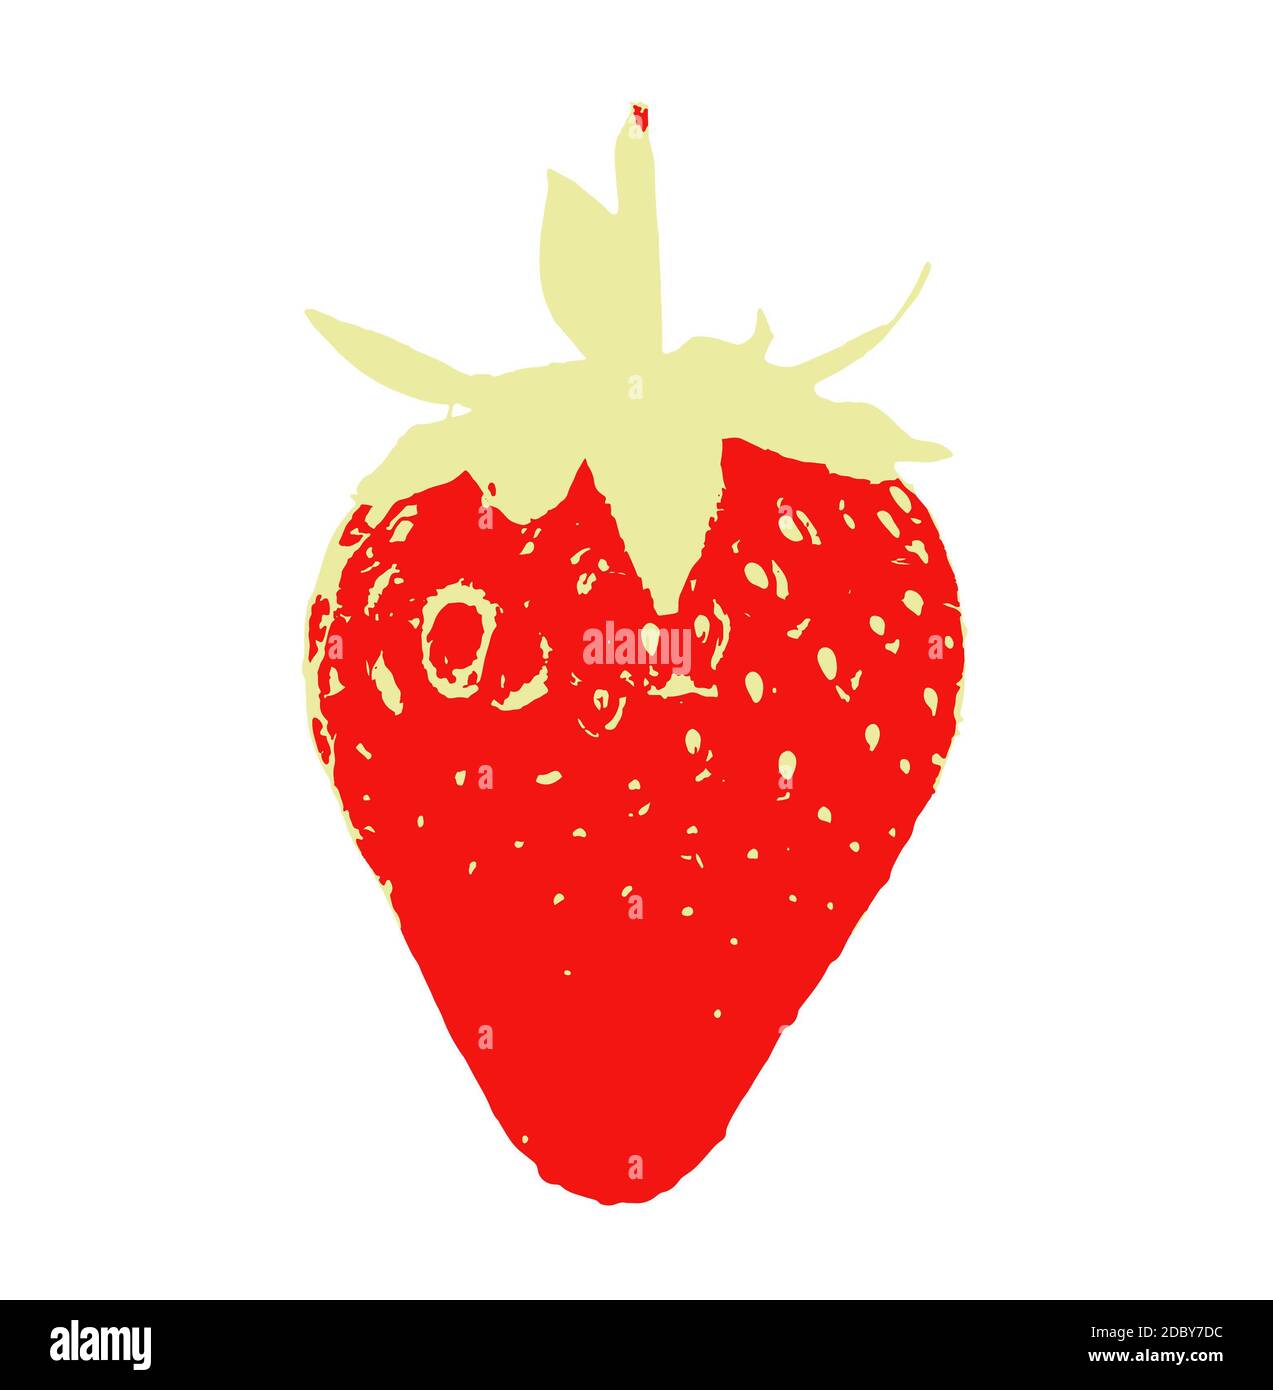 Erdbeerfrucht isoliert auf weißem Hintergrund. Erdbeeren sind eigentlich eine Gruppe von Früchten (Gattung Fragaria) mit mehreren Sorten und sind Teil Stockfoto